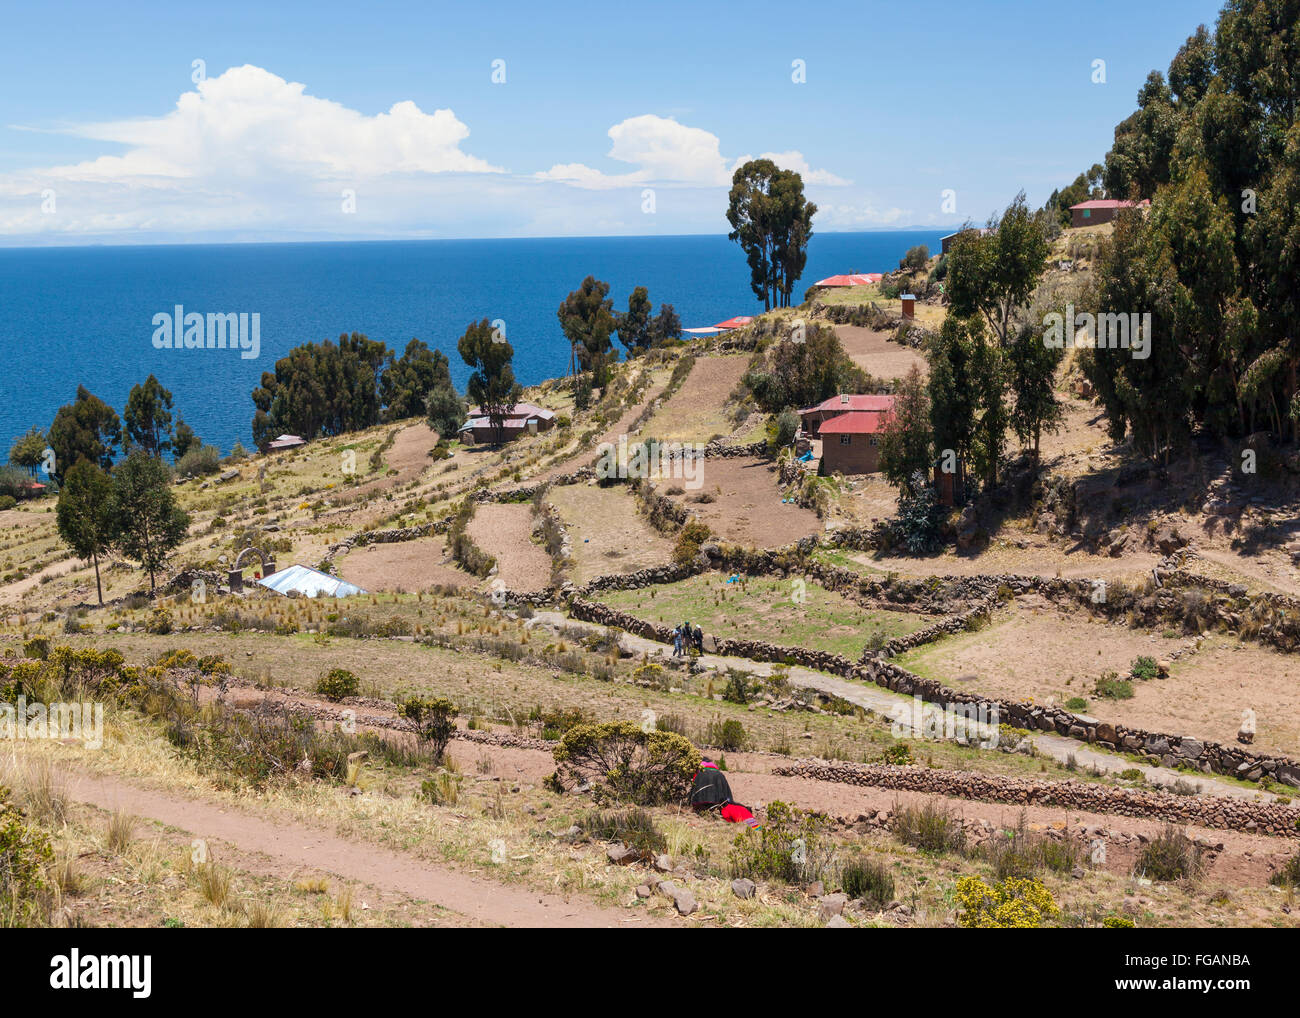 Tarquile paysage, Lac Titicaca, Pérou Banque D'Images